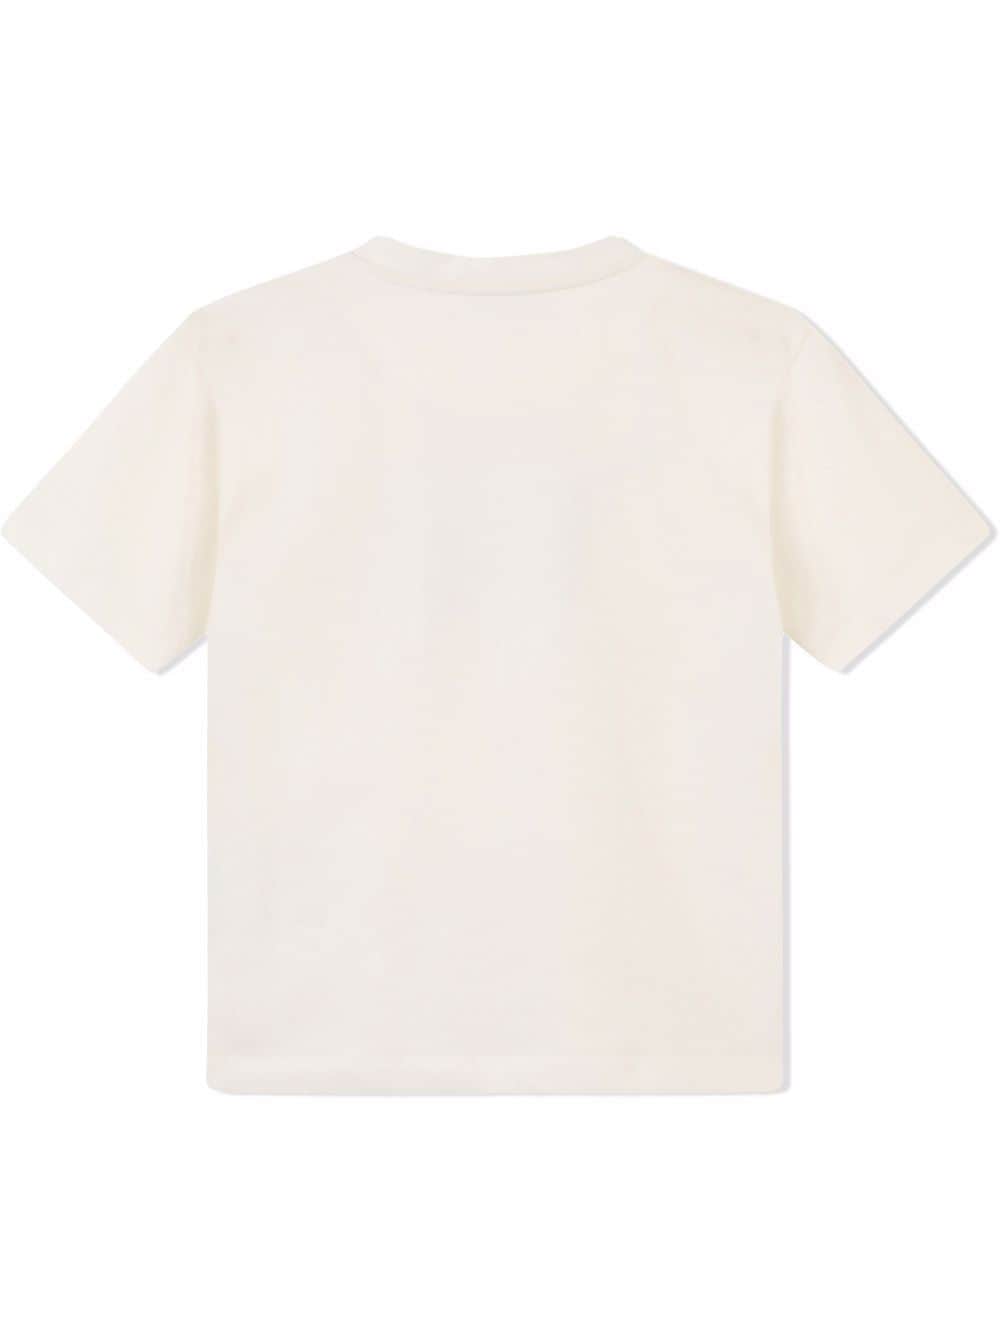 Dolce &amp; Gabbana Kids t-shirt con stampa